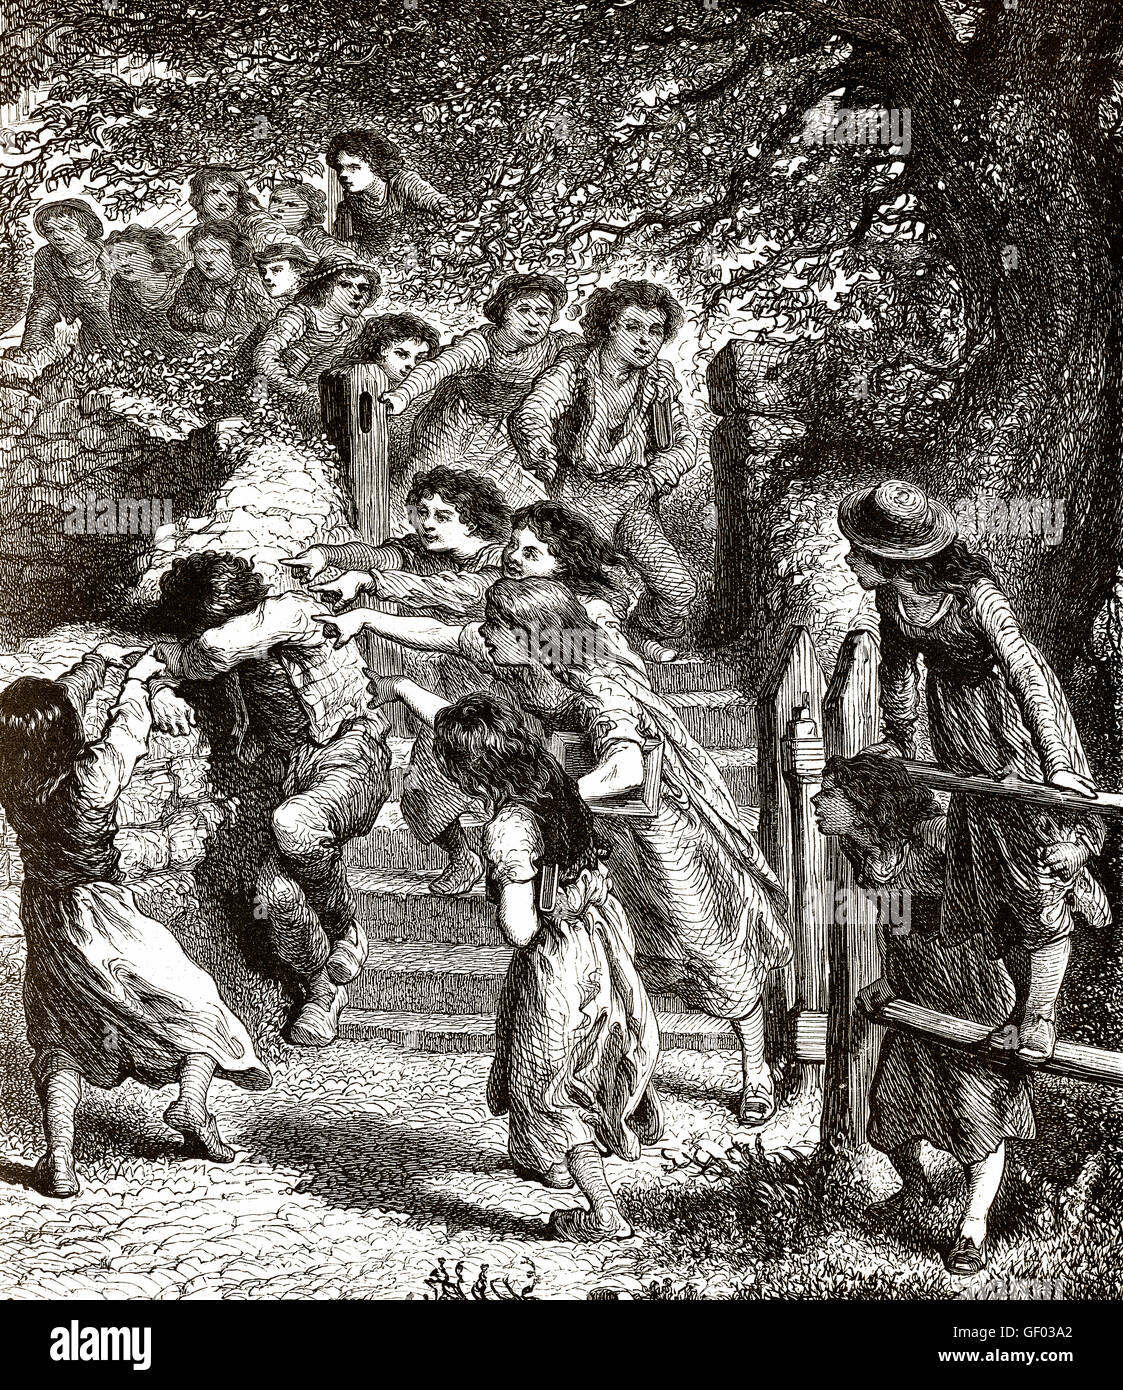 L'intimidation Les enfants d'un individu par un groupe, 19e siècle Banque D'Images